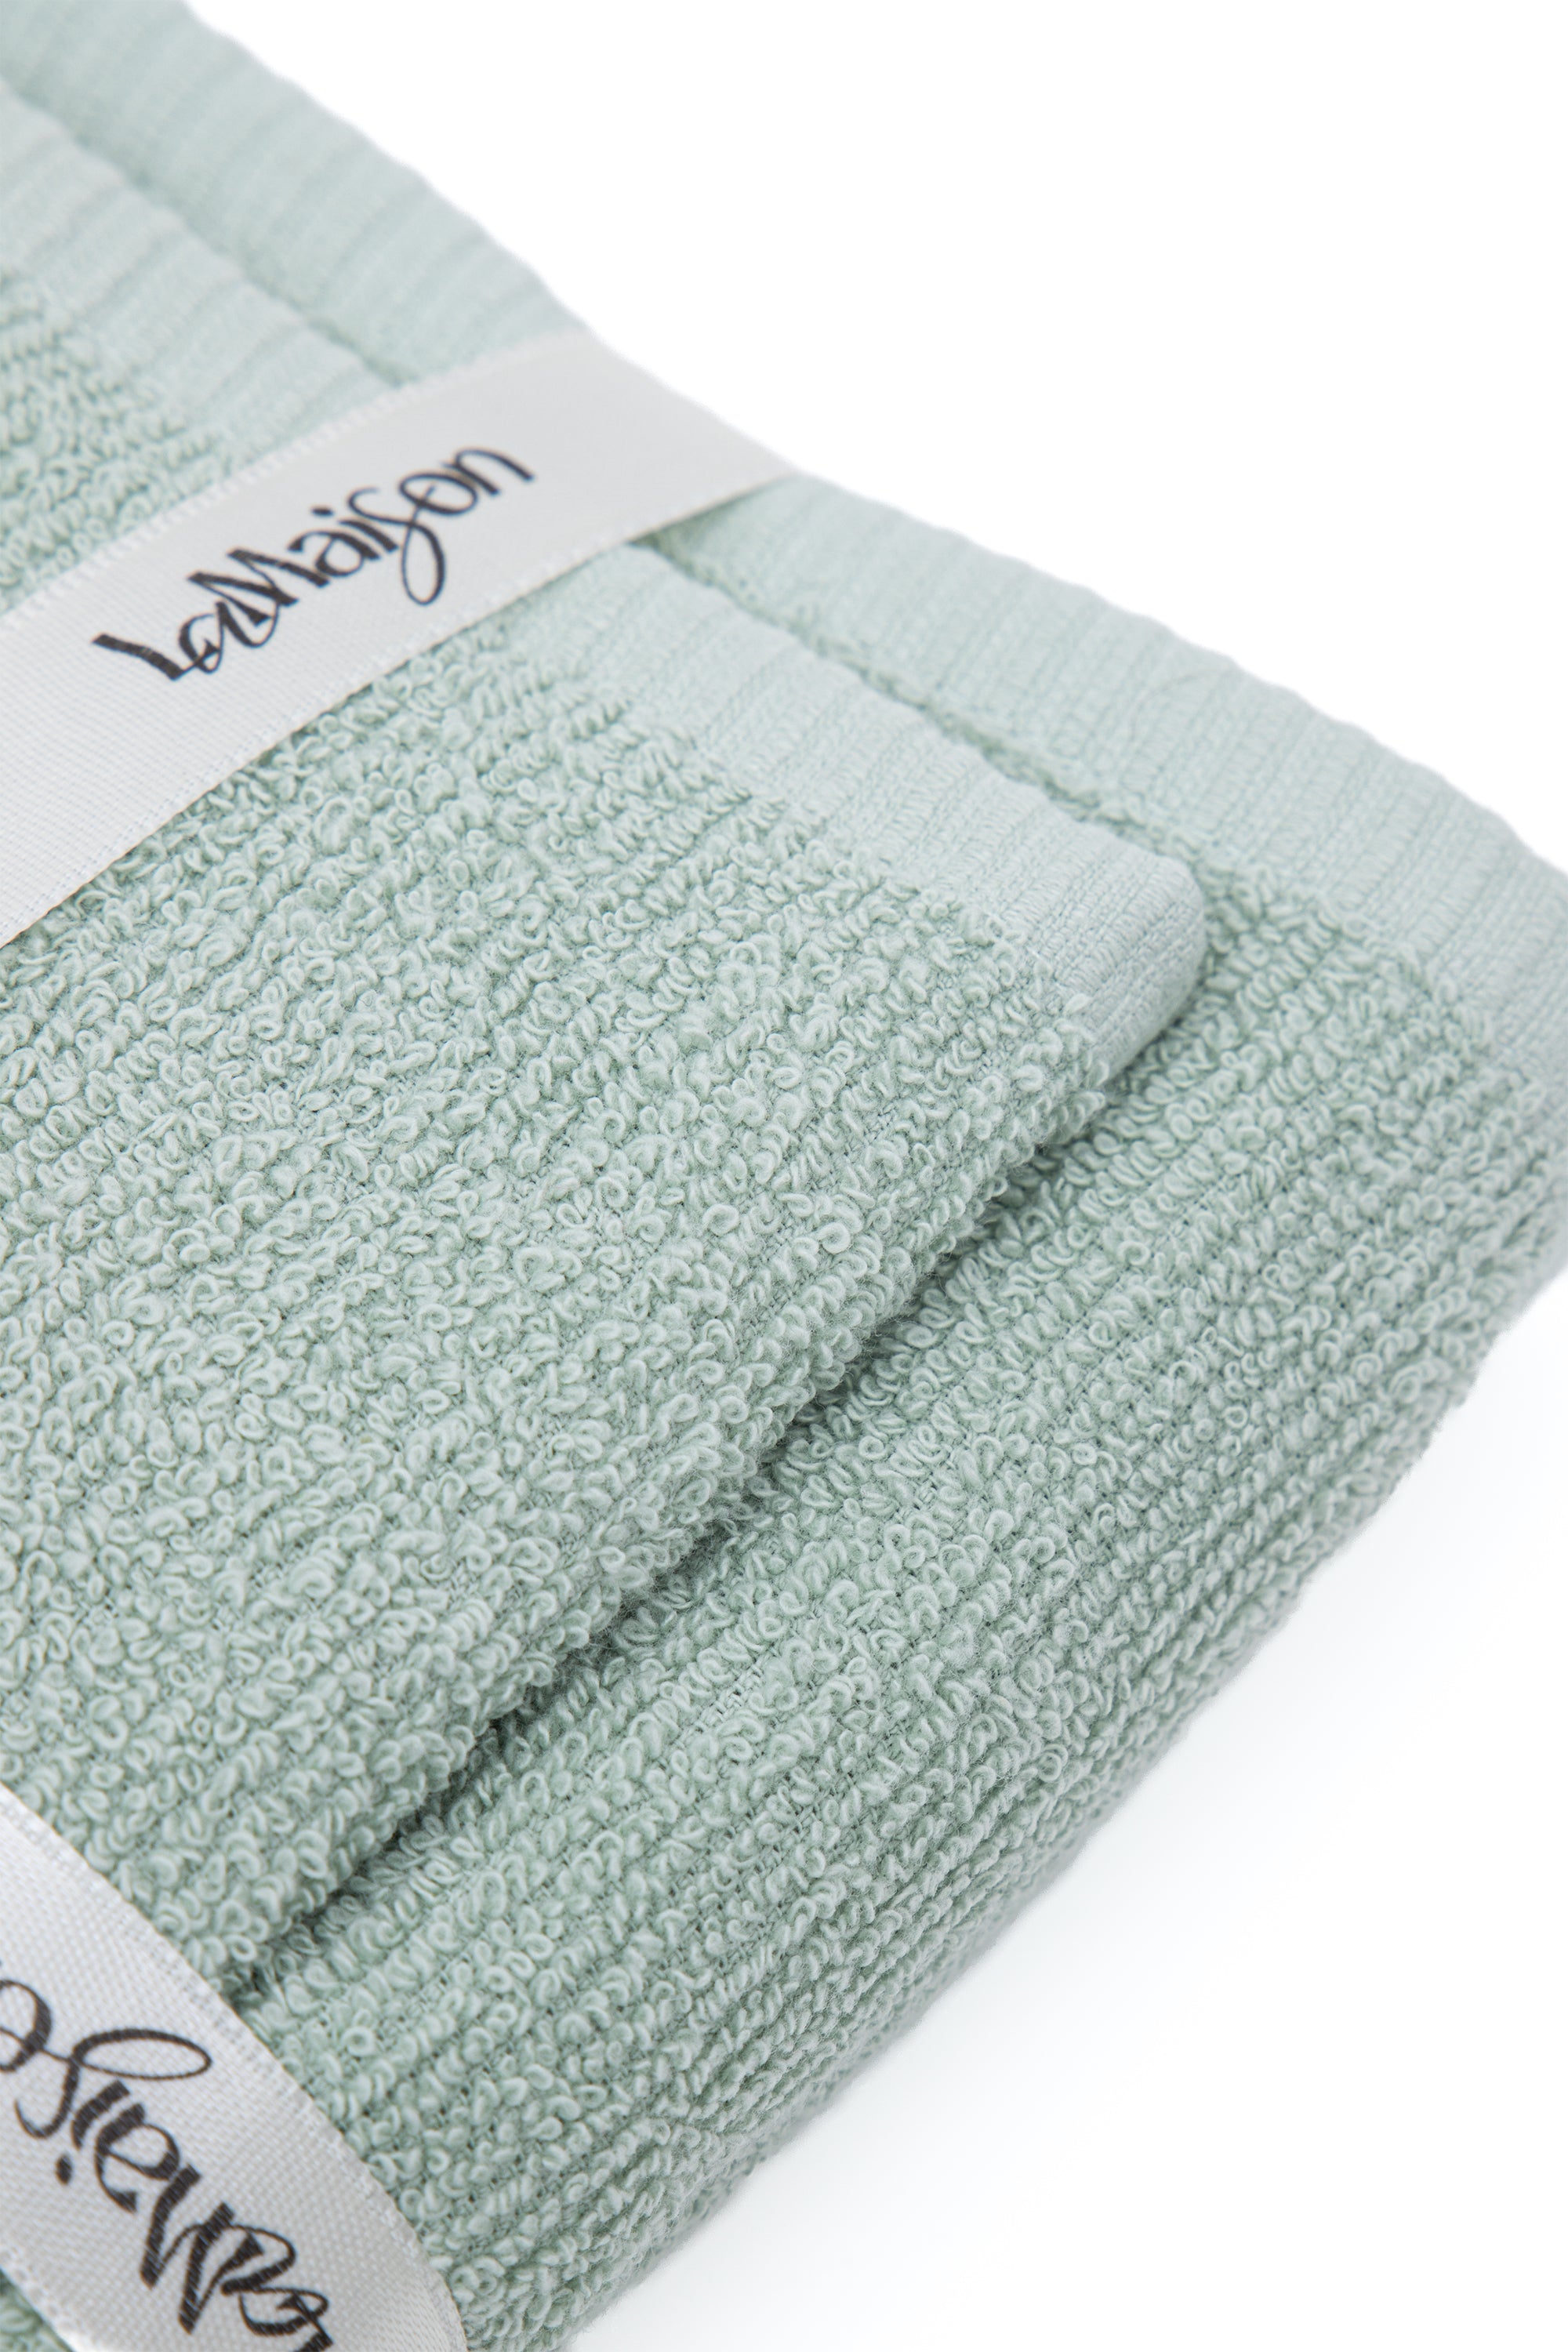 Asciugamano con ospite Verdino in cotone 550gsm | In vari disegni